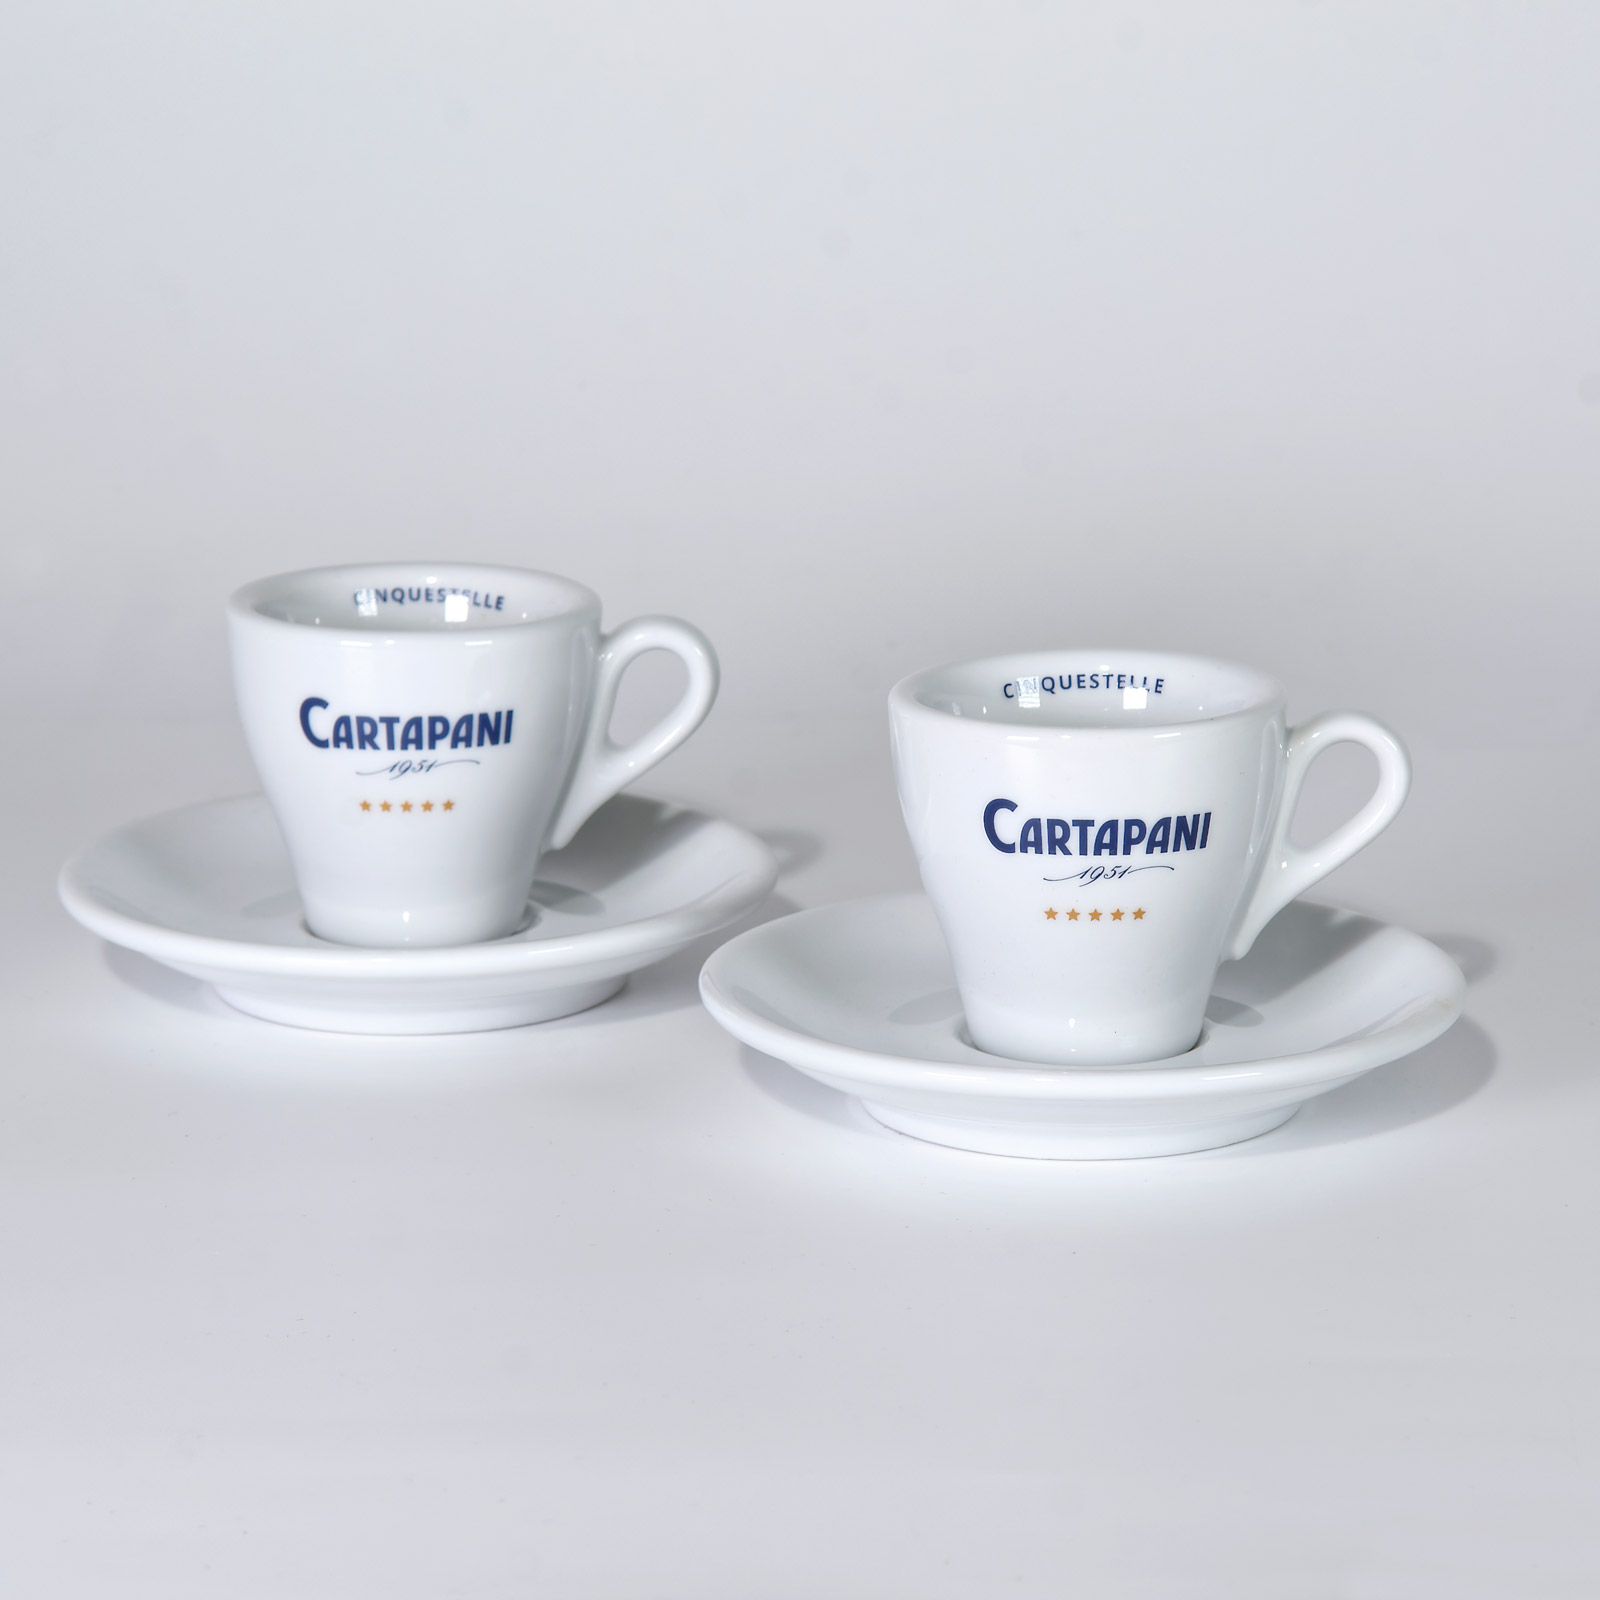 CARTAPANI Espressotasse - 2er Set inkl. Untertasse